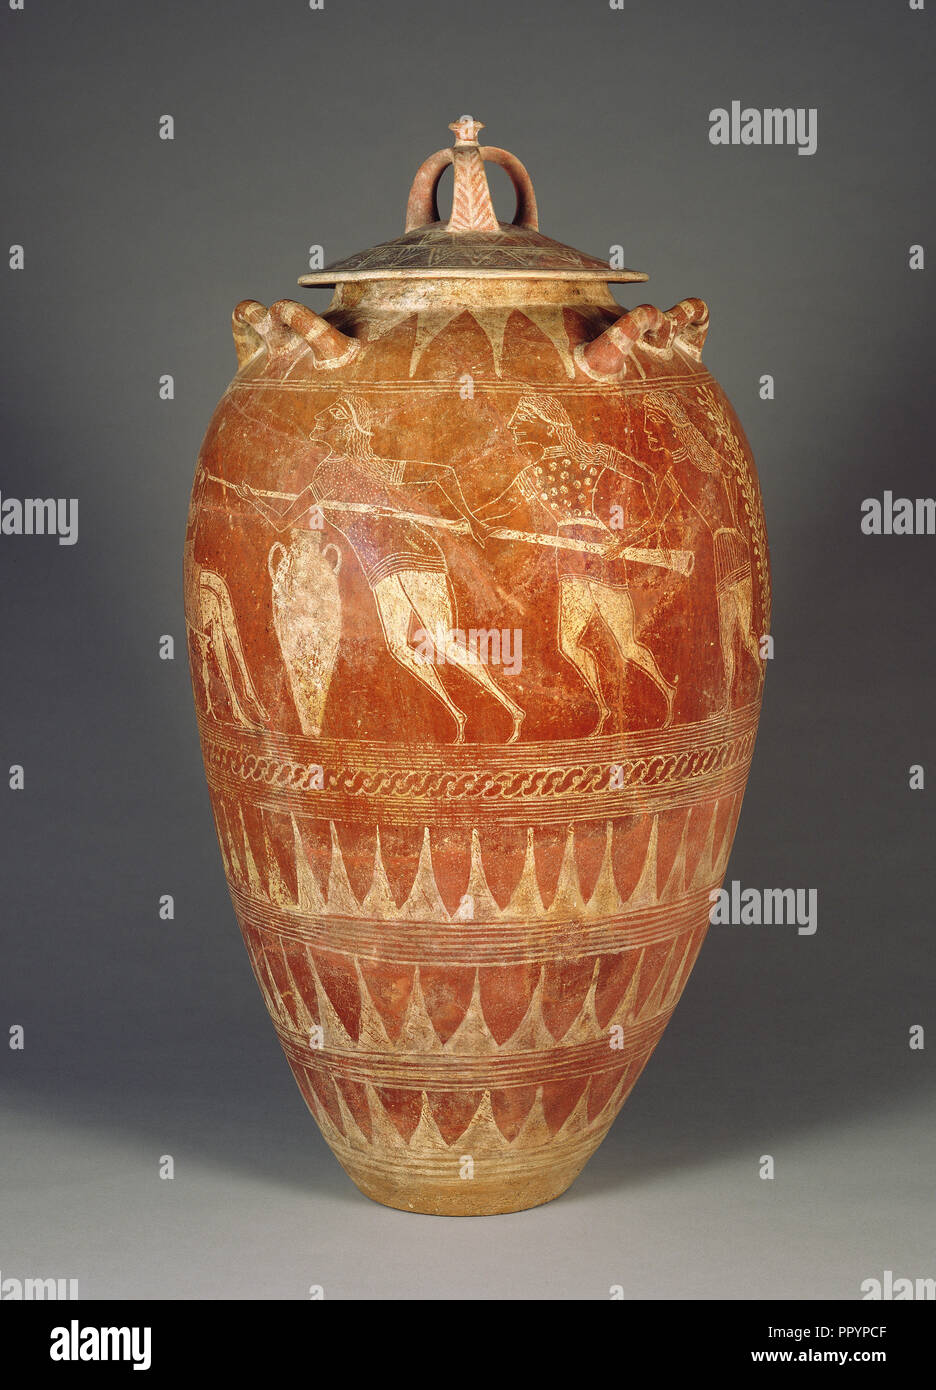 Storage Lidded Jar con l'accecamento di Polifemo; Etruria; 650 - 625 B.C; cotto; 100,7 × 56 cm, 39 5,8 × 22 1,16 in Foto Stock